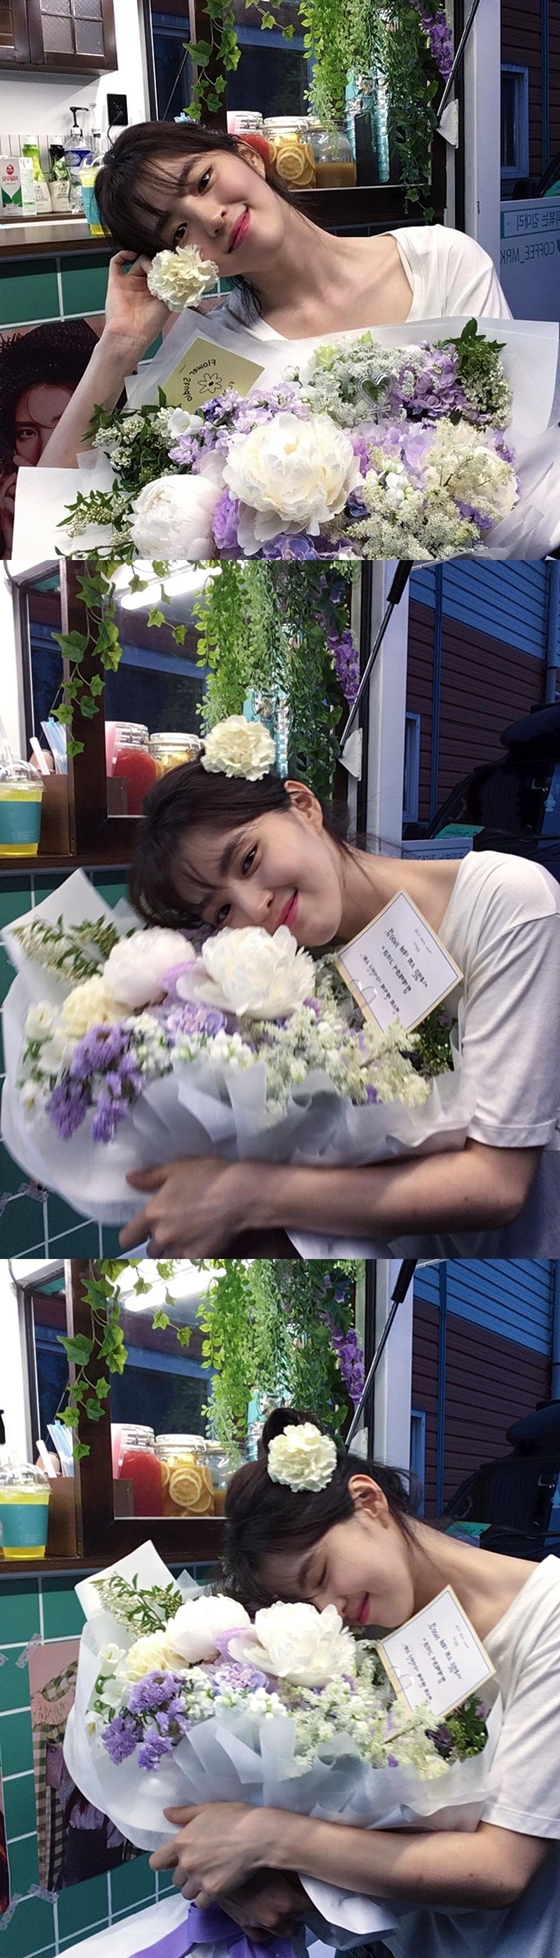 배우 한소희가 꽃보다 아름다운 미모로 팬들의 시선을 사로잡았다./사진=한소희 인스타그램